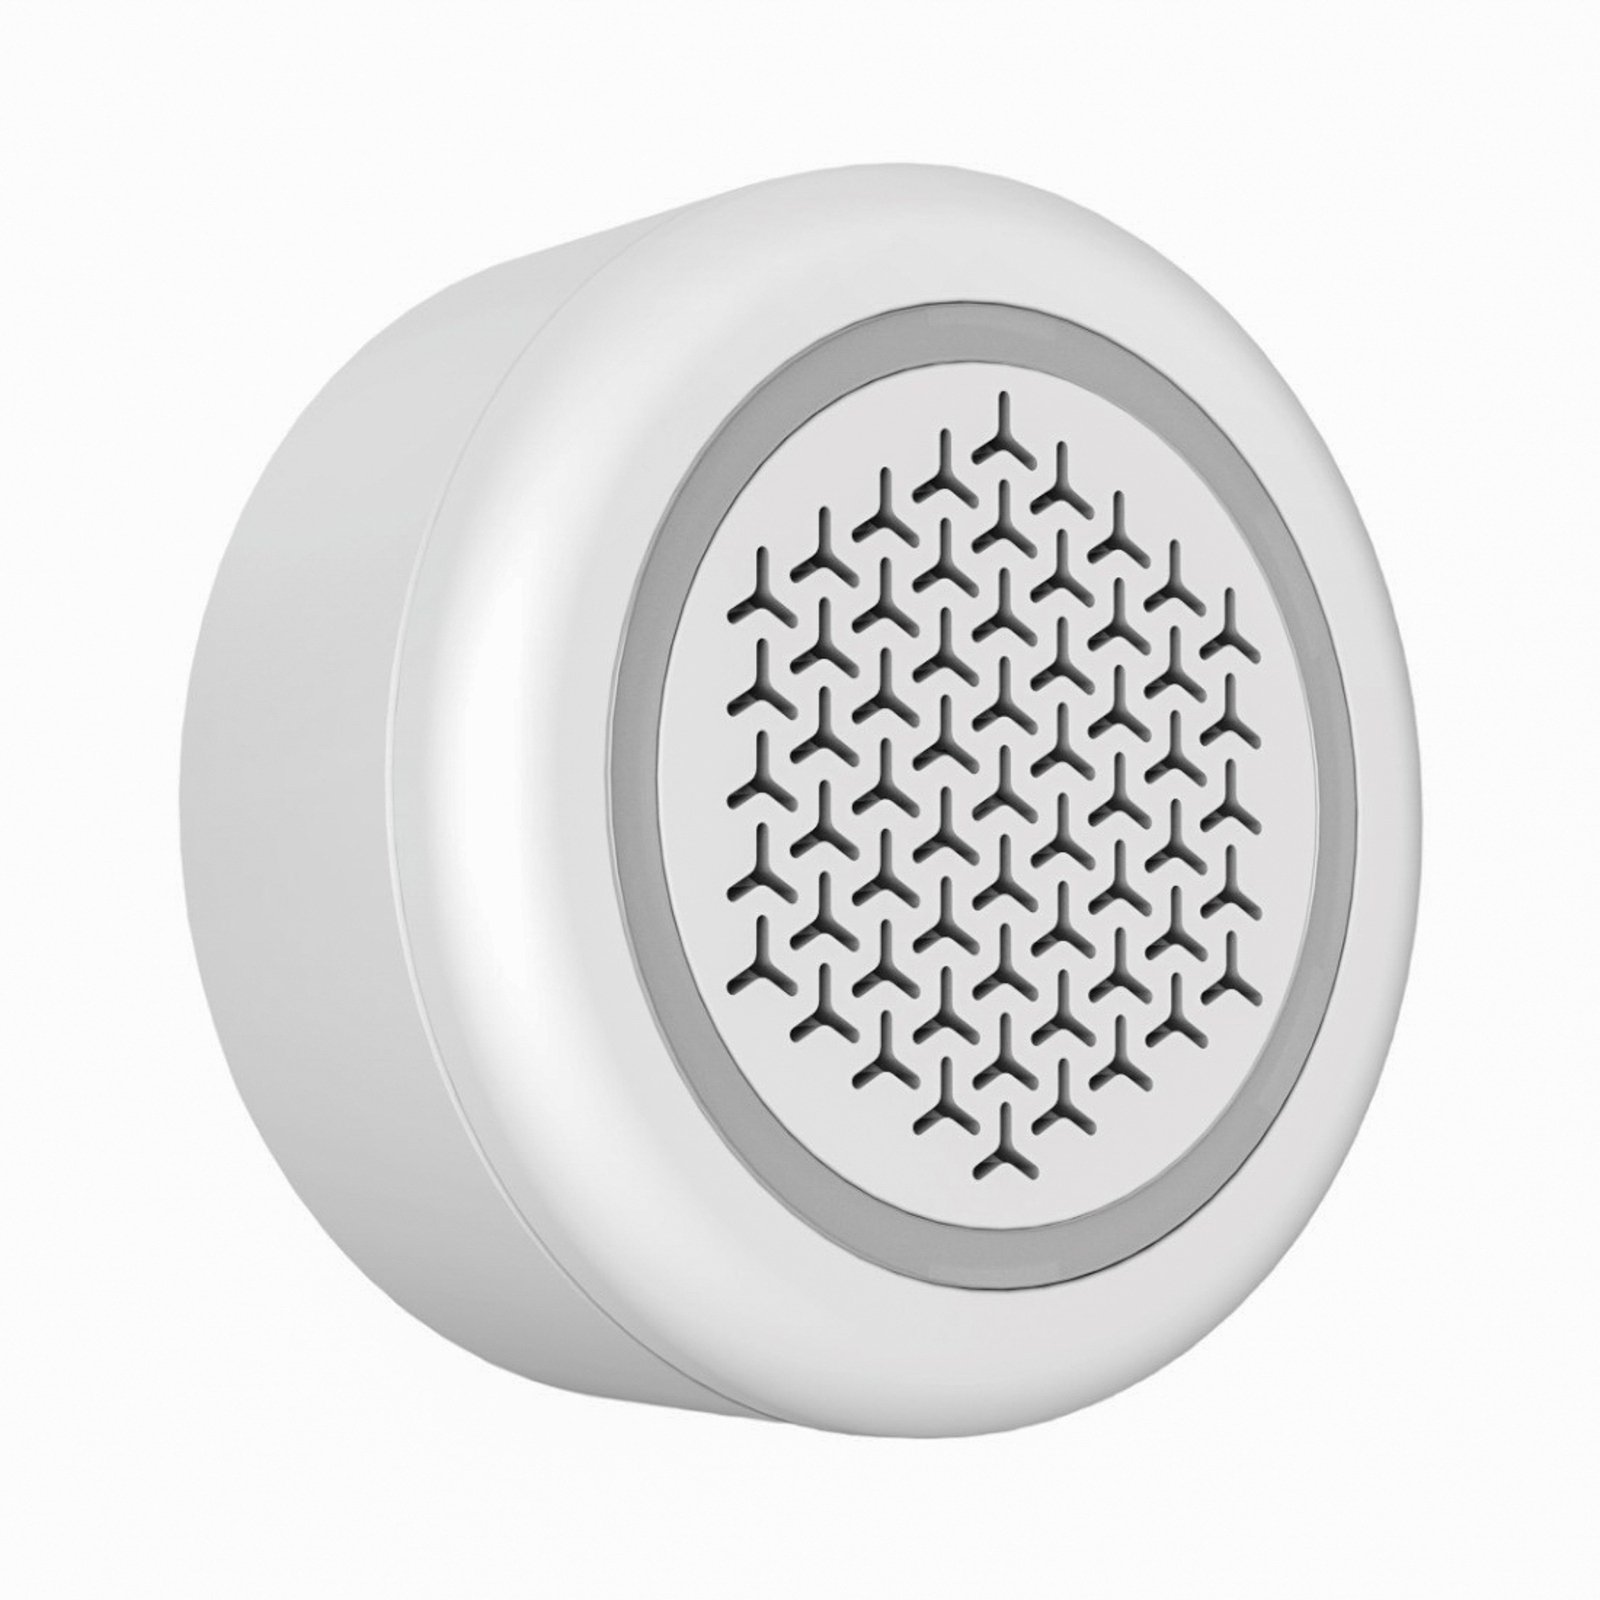 Hama WLAN siren, temperature/ambient air sensor